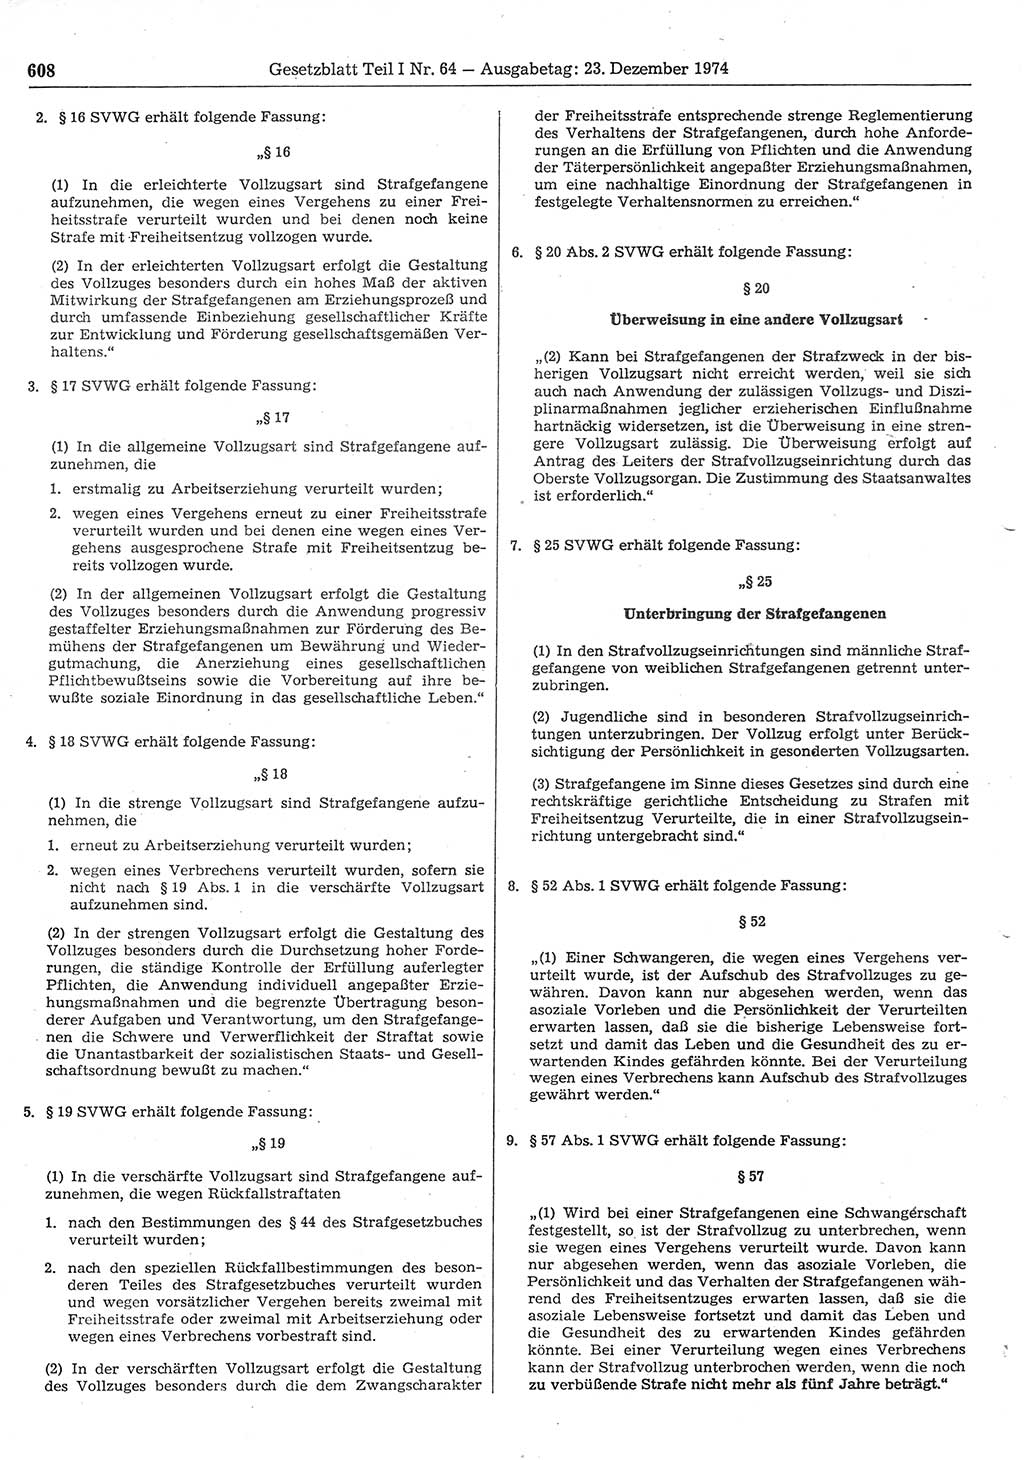 Gesetzblatt (GBl.) der Deutschen Demokratischen Republik (DDR) Teil Ⅰ 1974, Seite 608 (GBl. DDR Ⅰ 1974, S. 608)